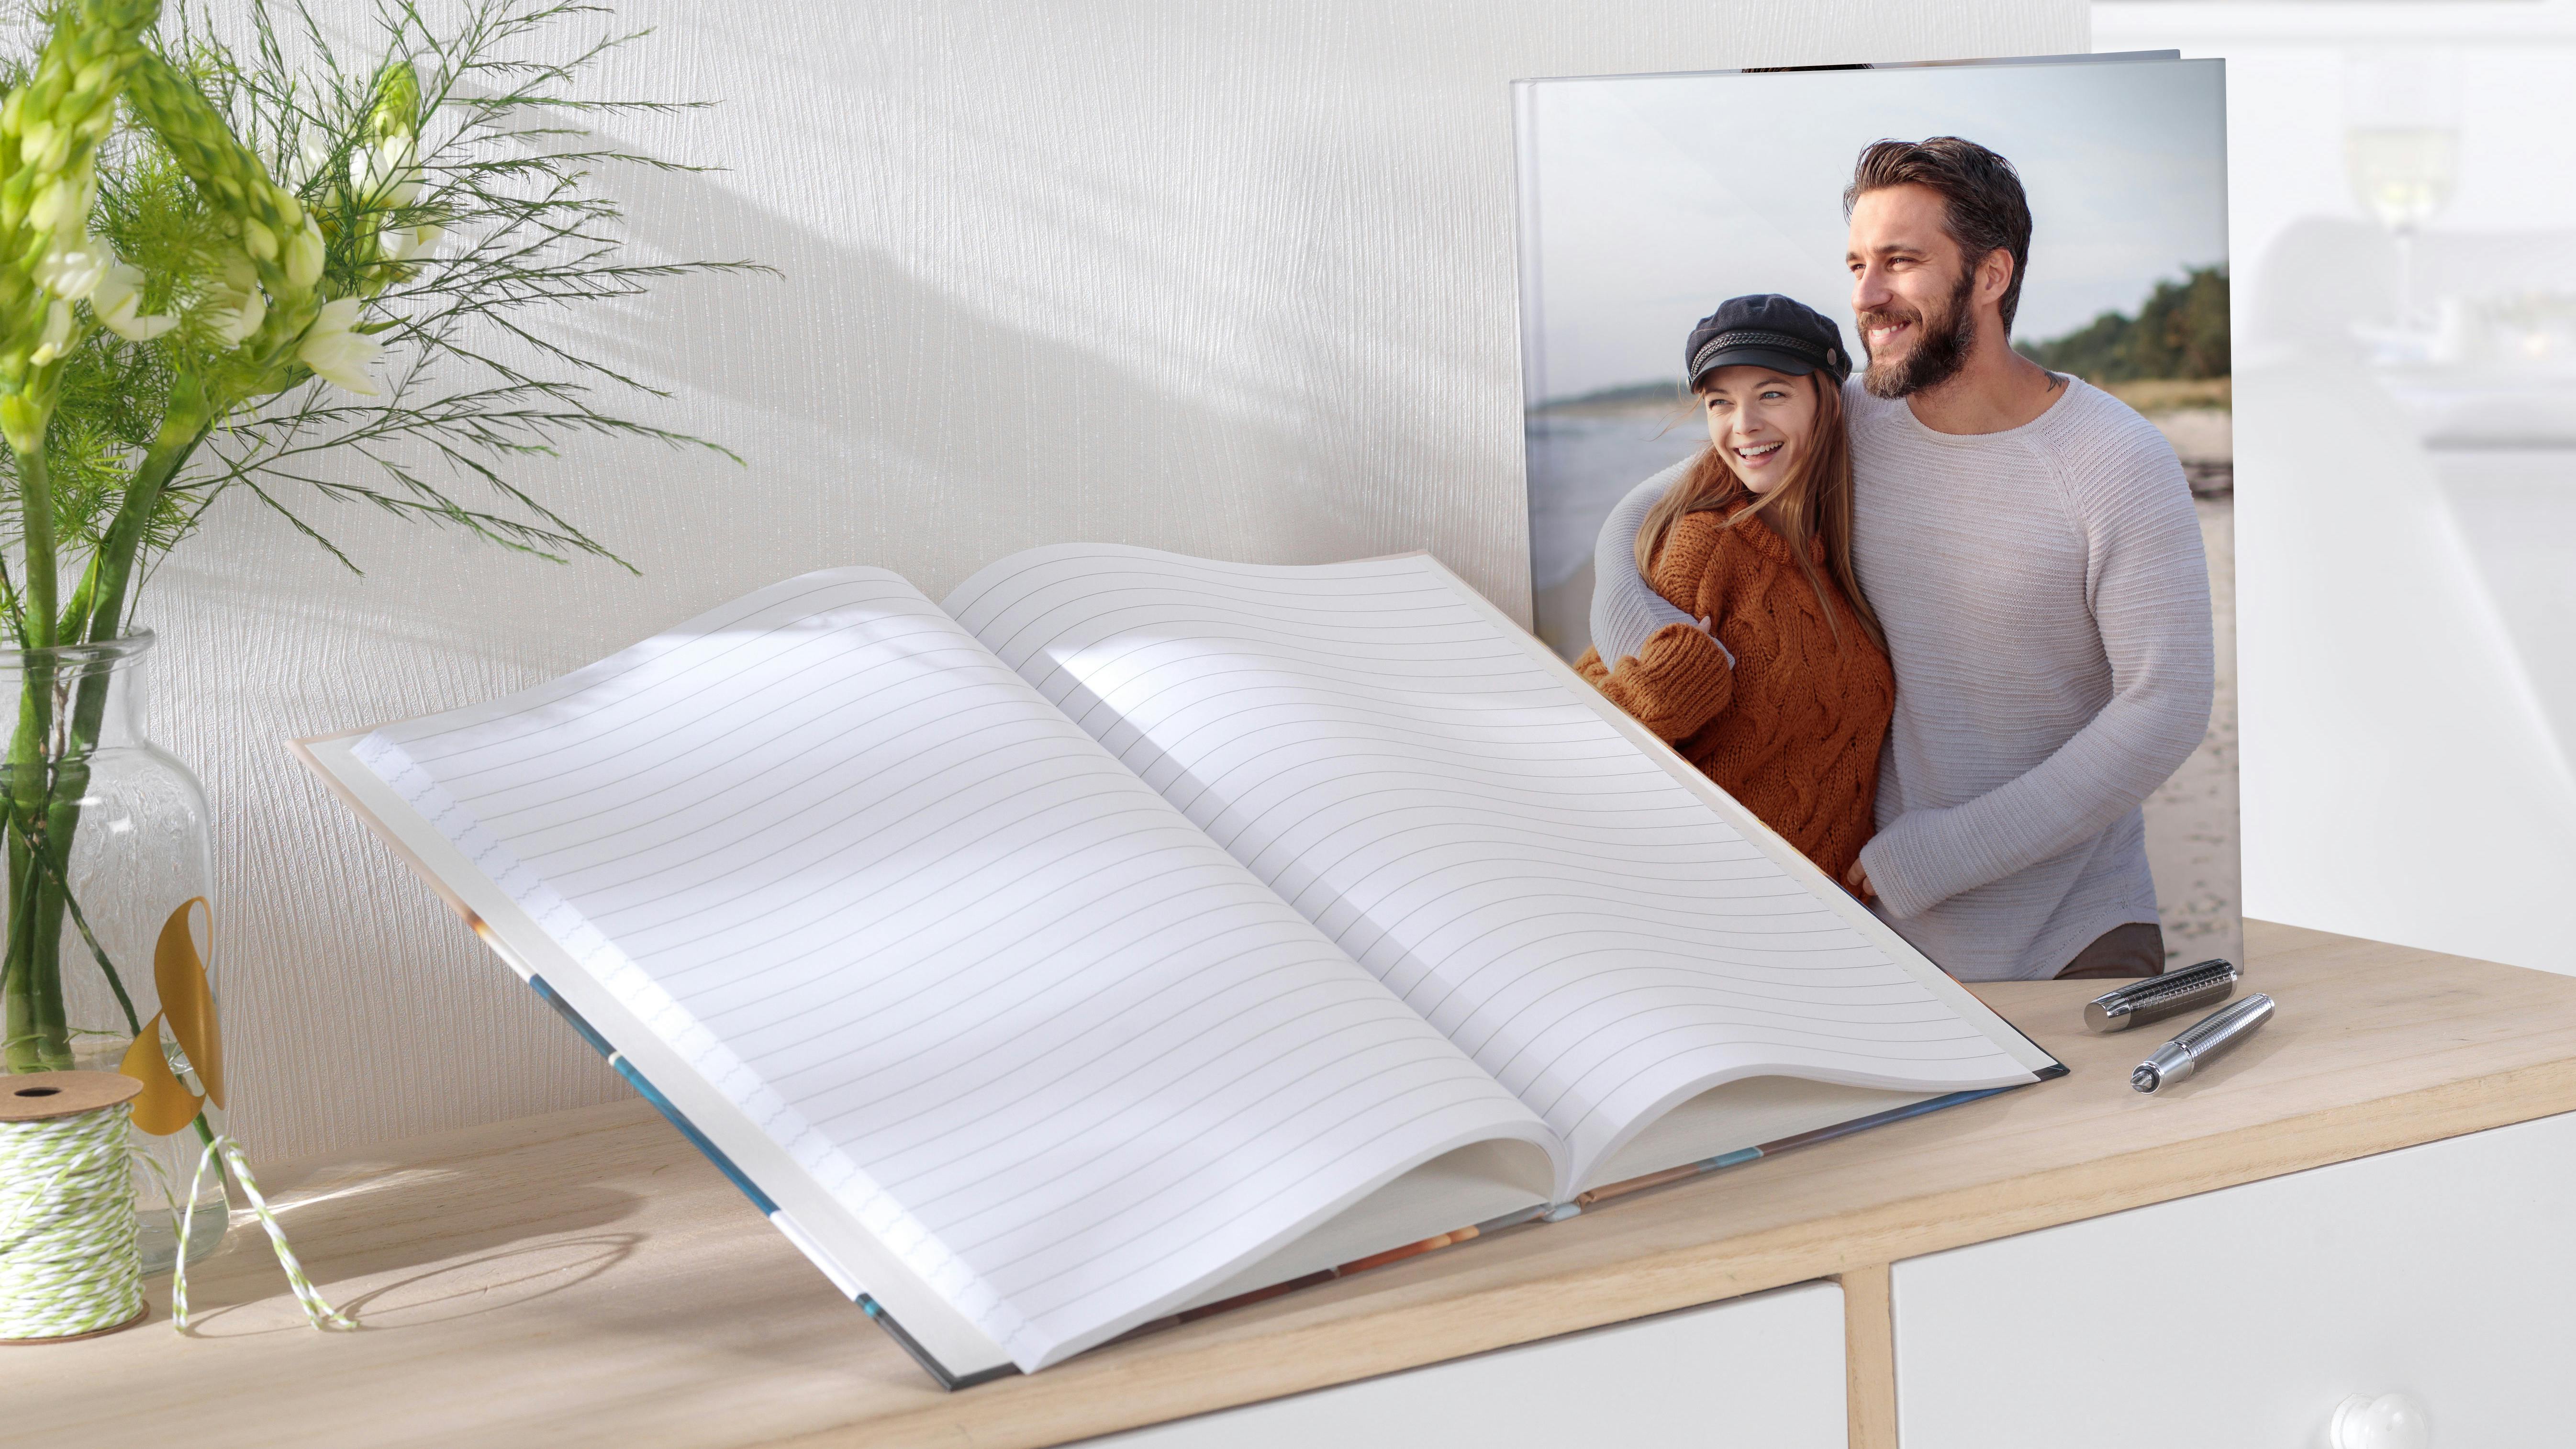 Notizbuch mit einem Bild von einem Paar auf einem Regal